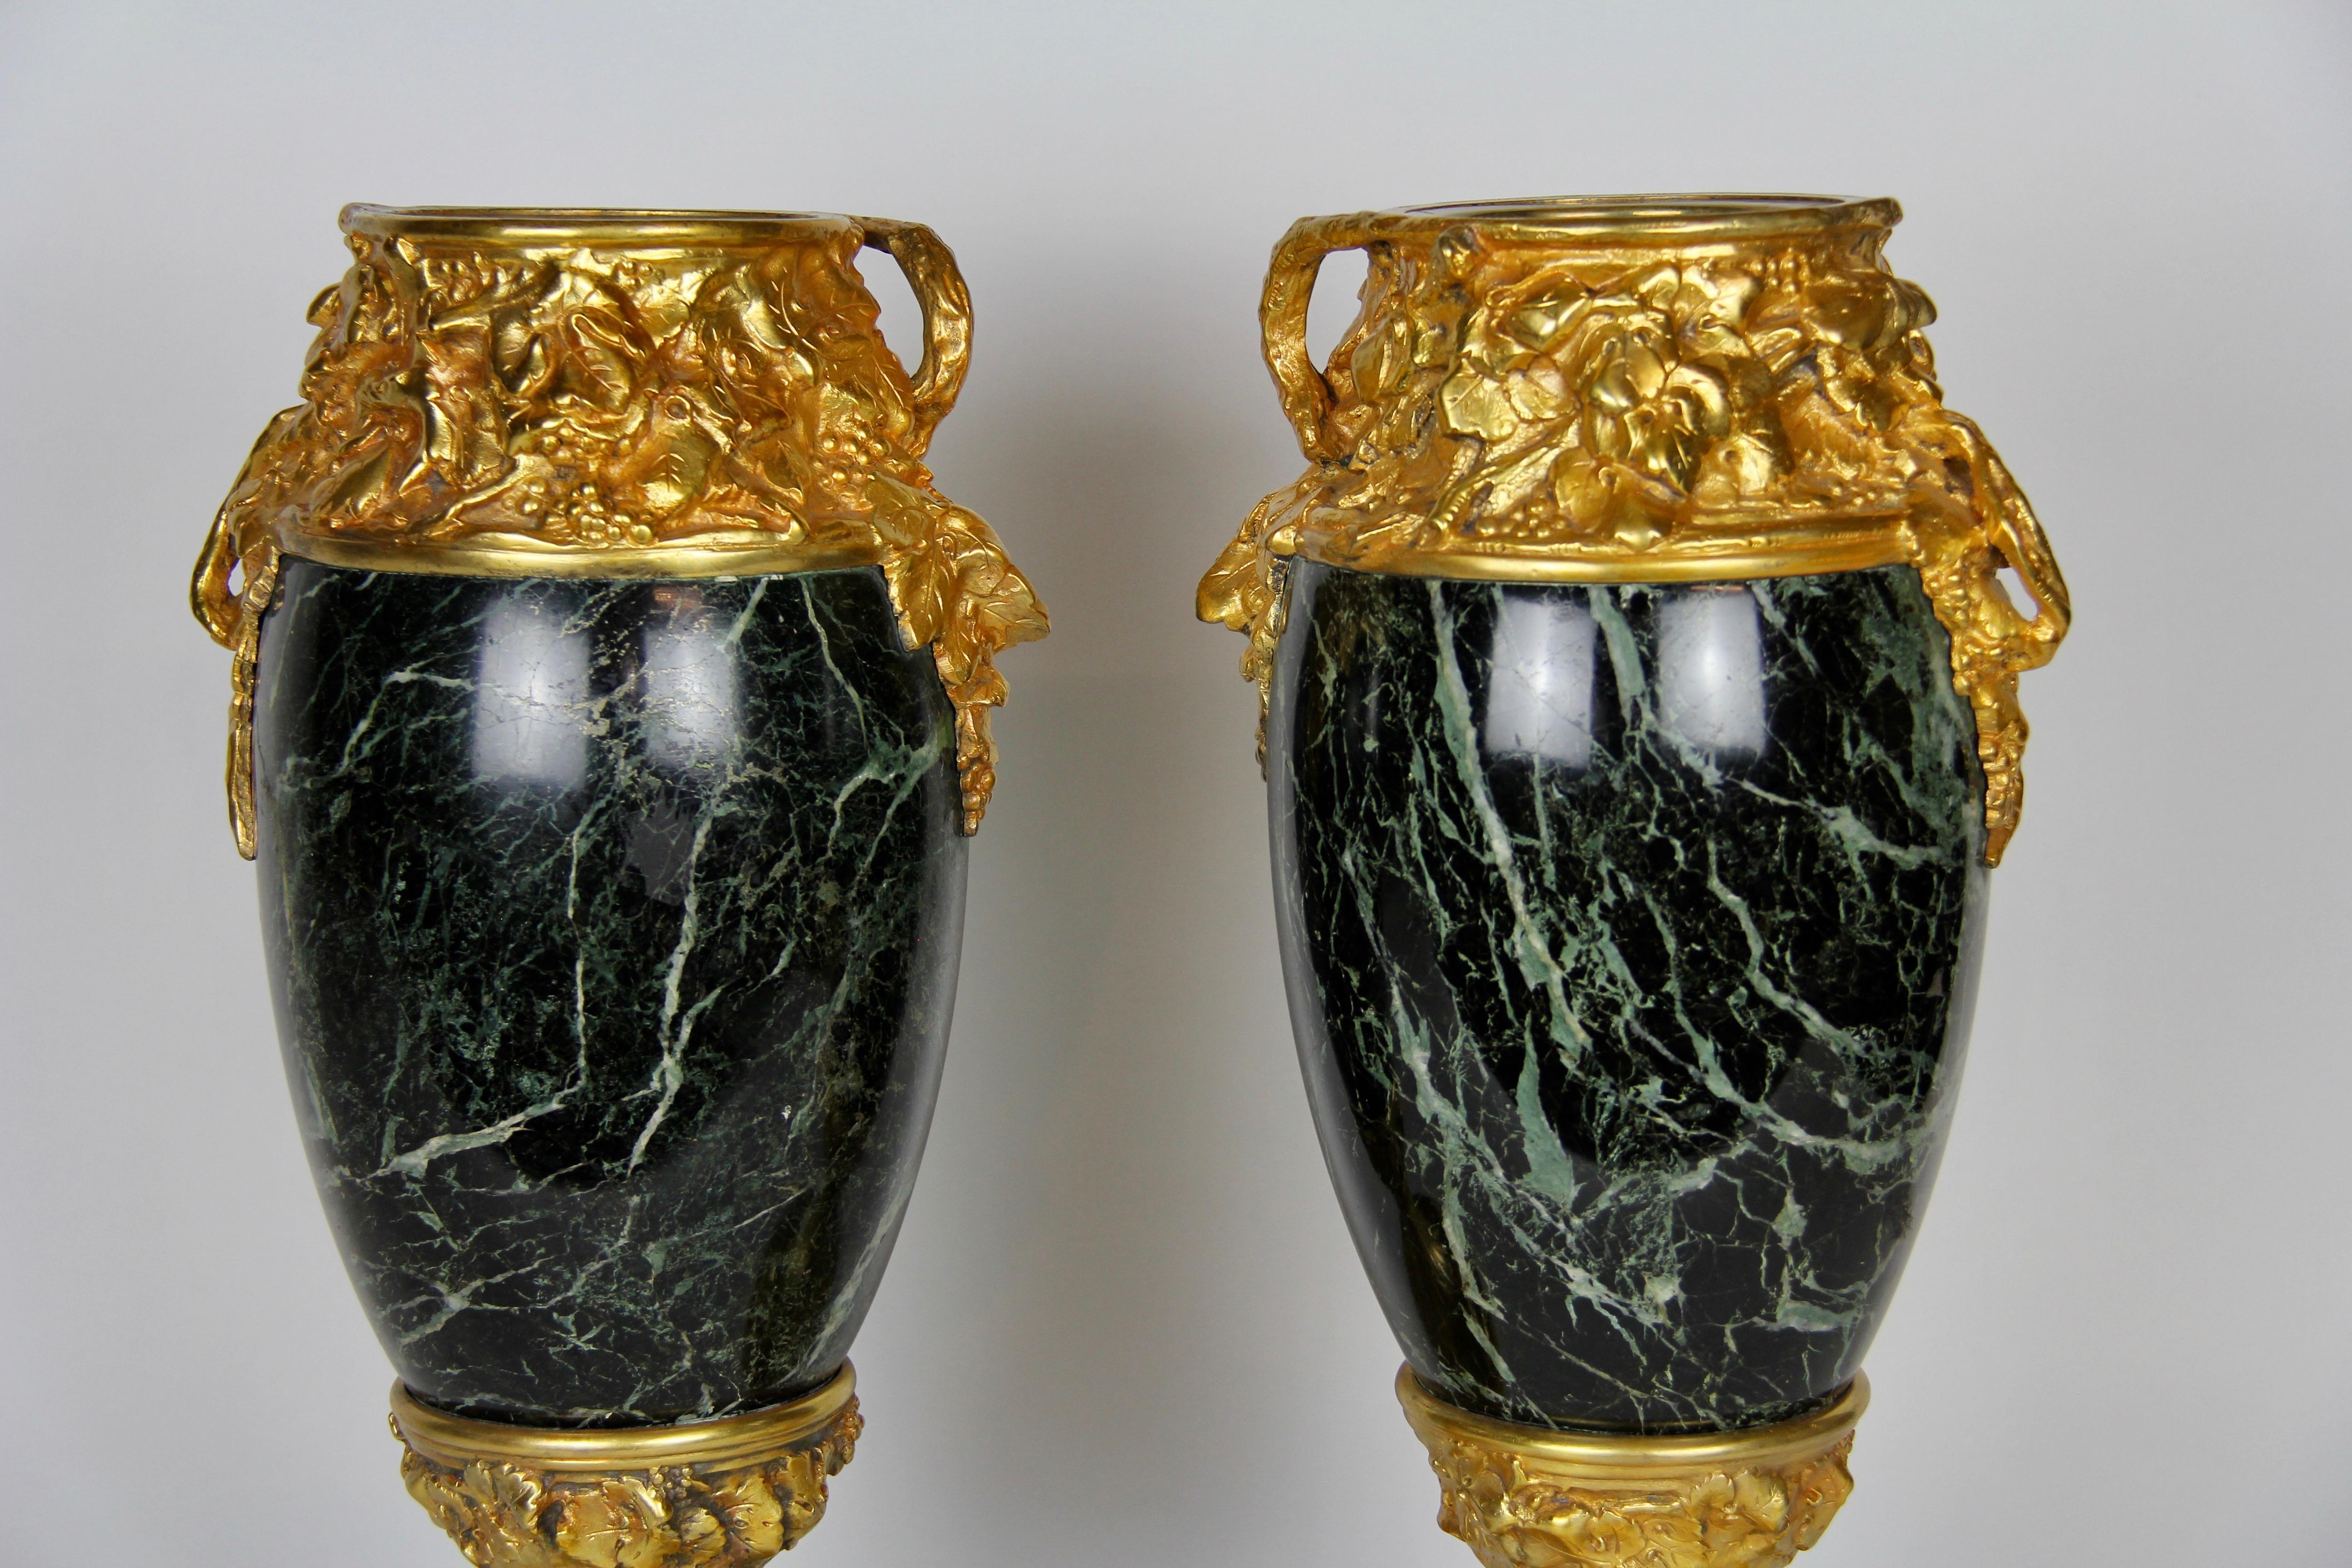 French Pr. Louis Art Nouveau Dore Bronze Mounted Verde Antico Marble Vases A. Marionnet For Sale